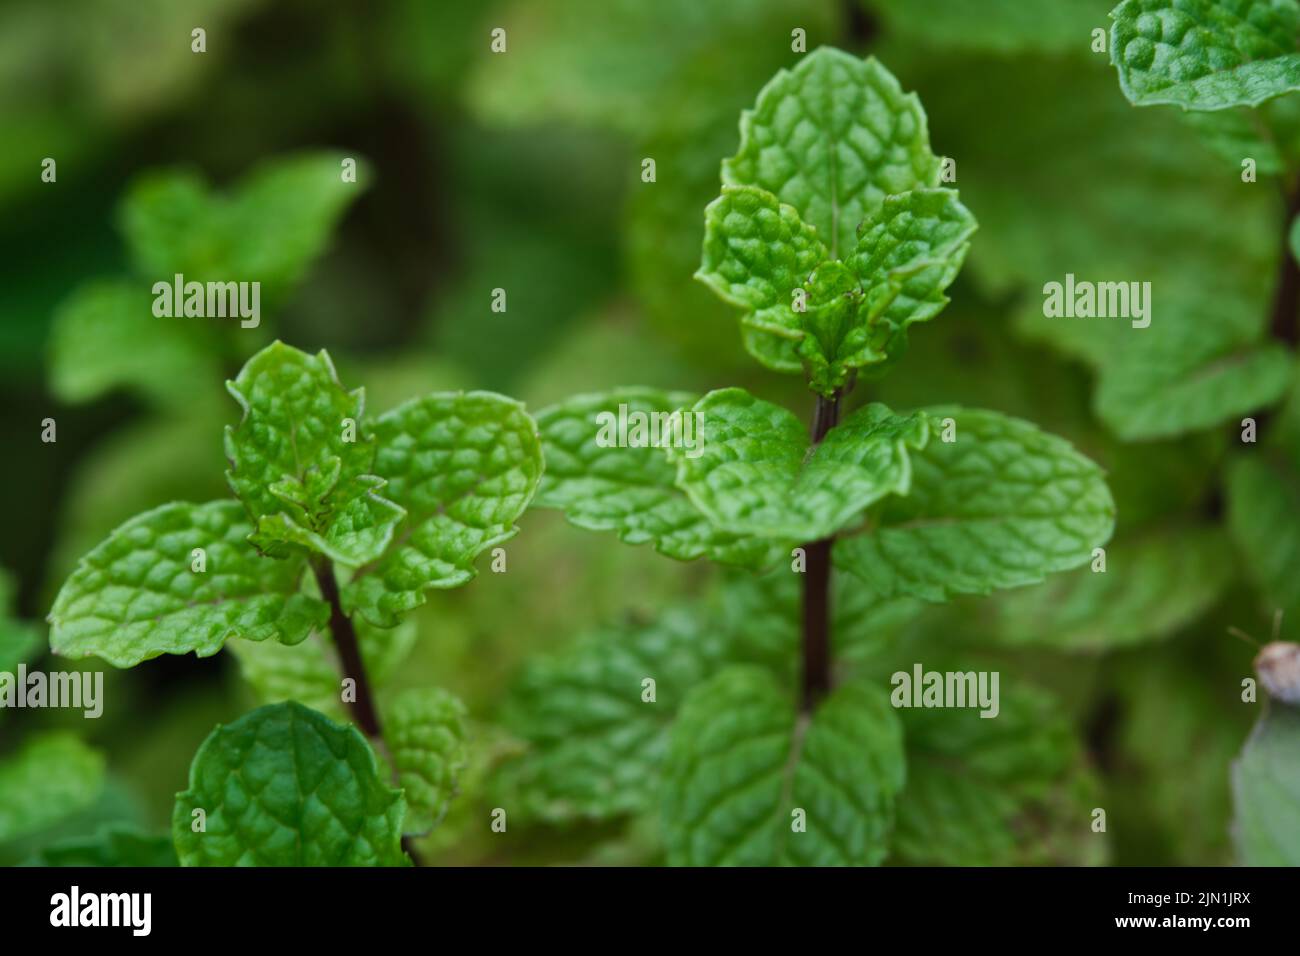 Gartenminze, Speerminze, Bush-Minze, Menthol-Minze im Gartenbeet wachsen Minzpflanzen im Gemüsegarten. Stockfoto